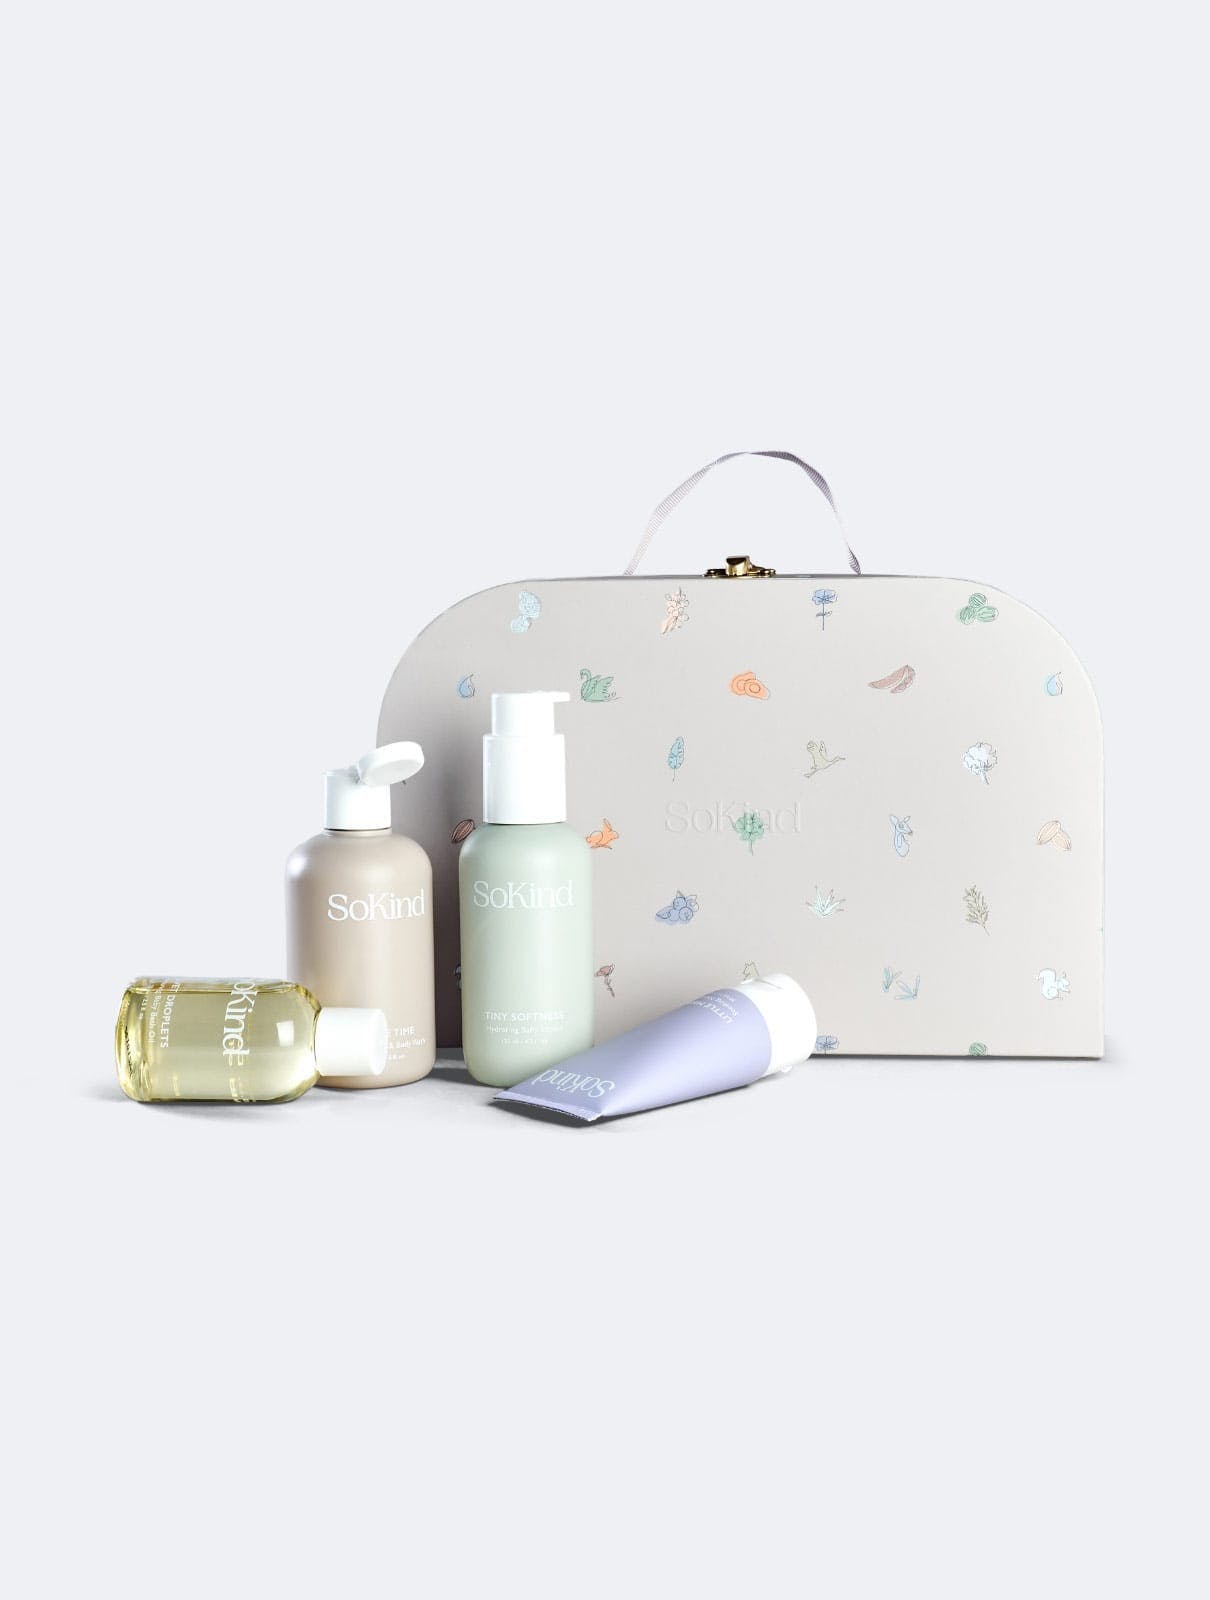 SoKind - Dear Baby Skin Care Kit